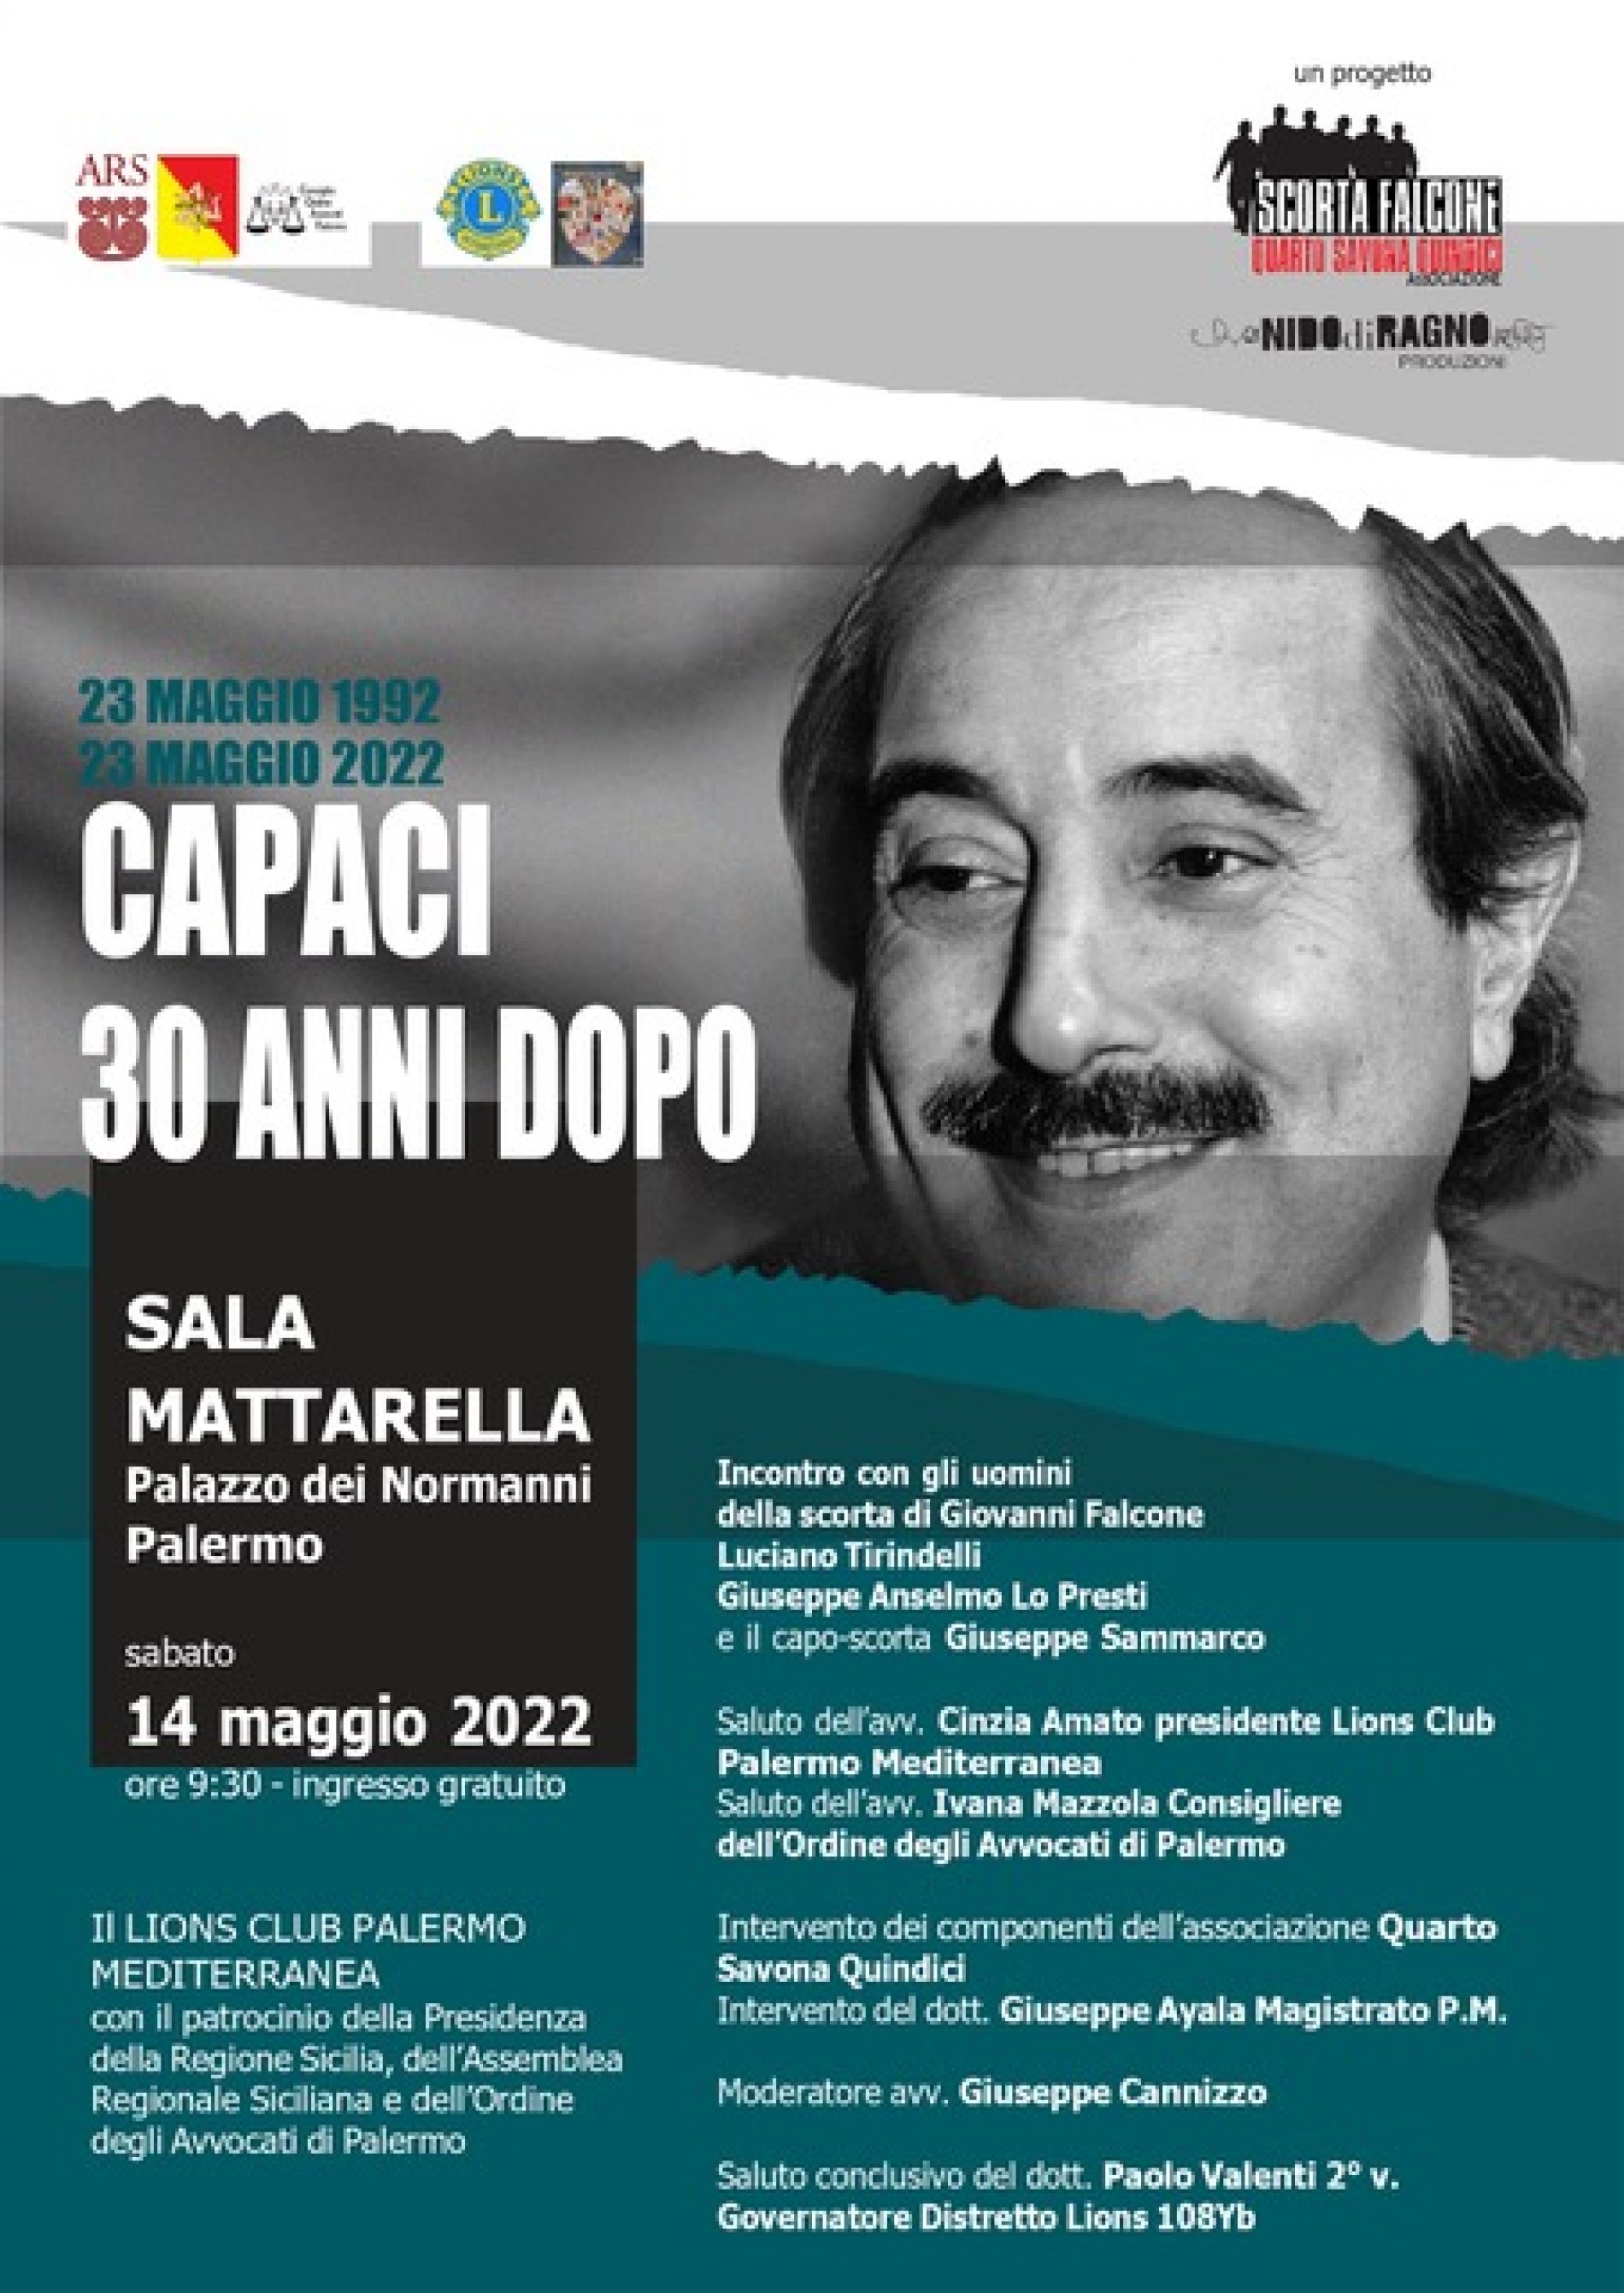 “Capaci 30 anni dopo”: sabato 14 maggio, convegno a Palazzo dei Normanni organizzato dal Lions Club Palermo Mediterranea